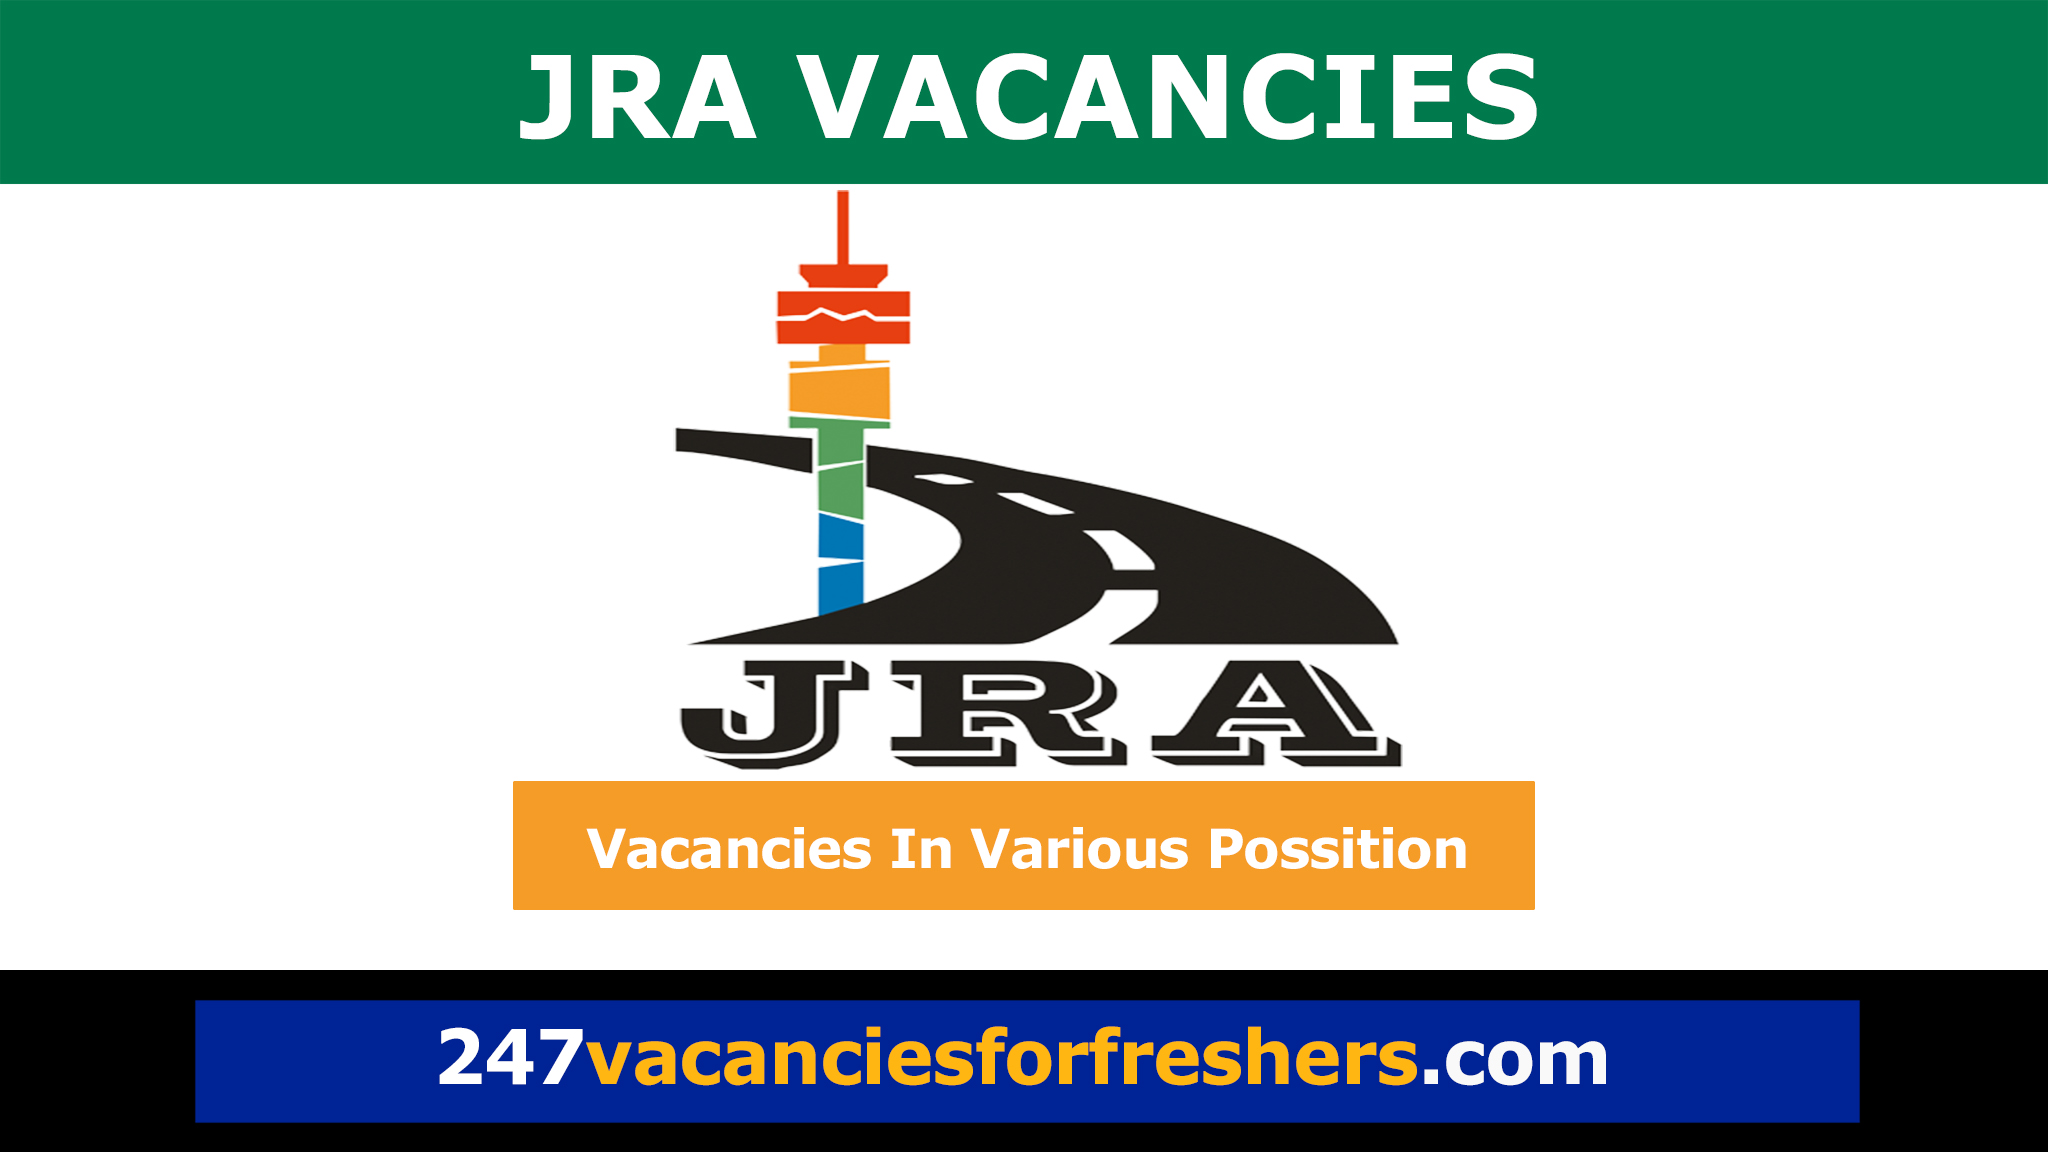 JRA vacancies